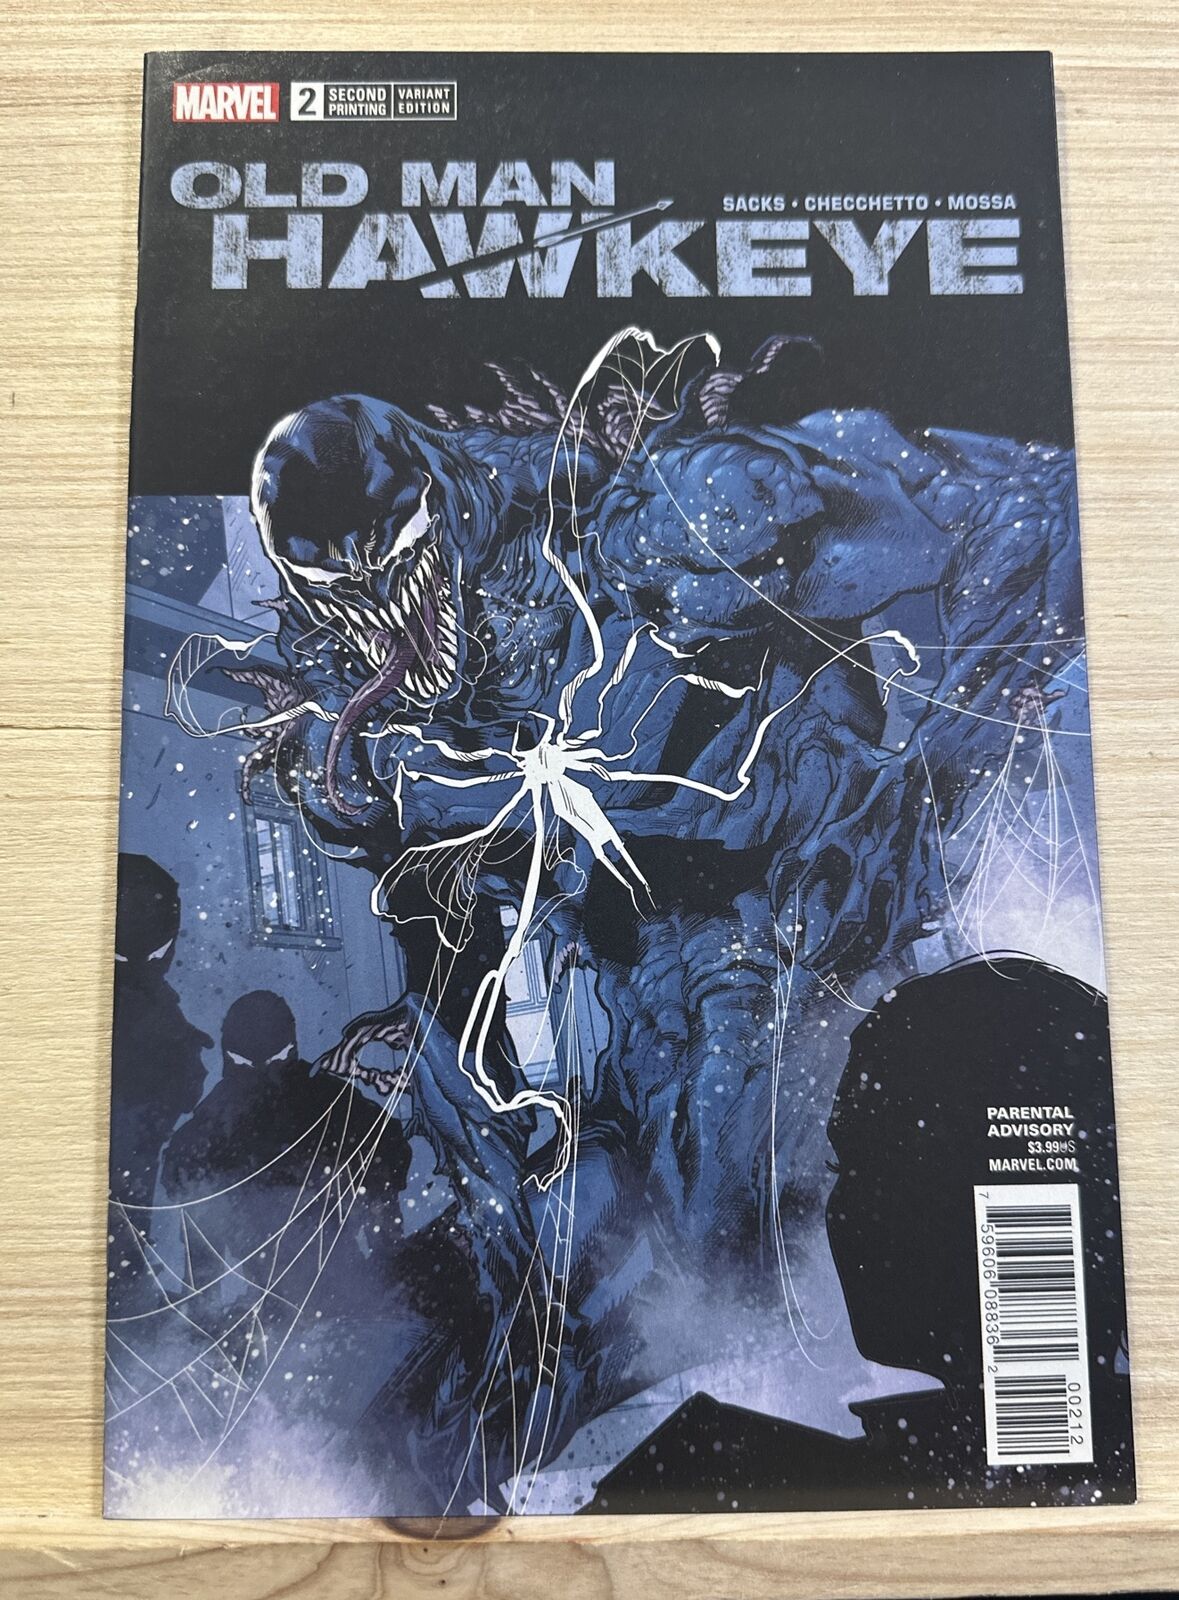 Old Man Hawkeye (2018) Issue #2 Variant Edition